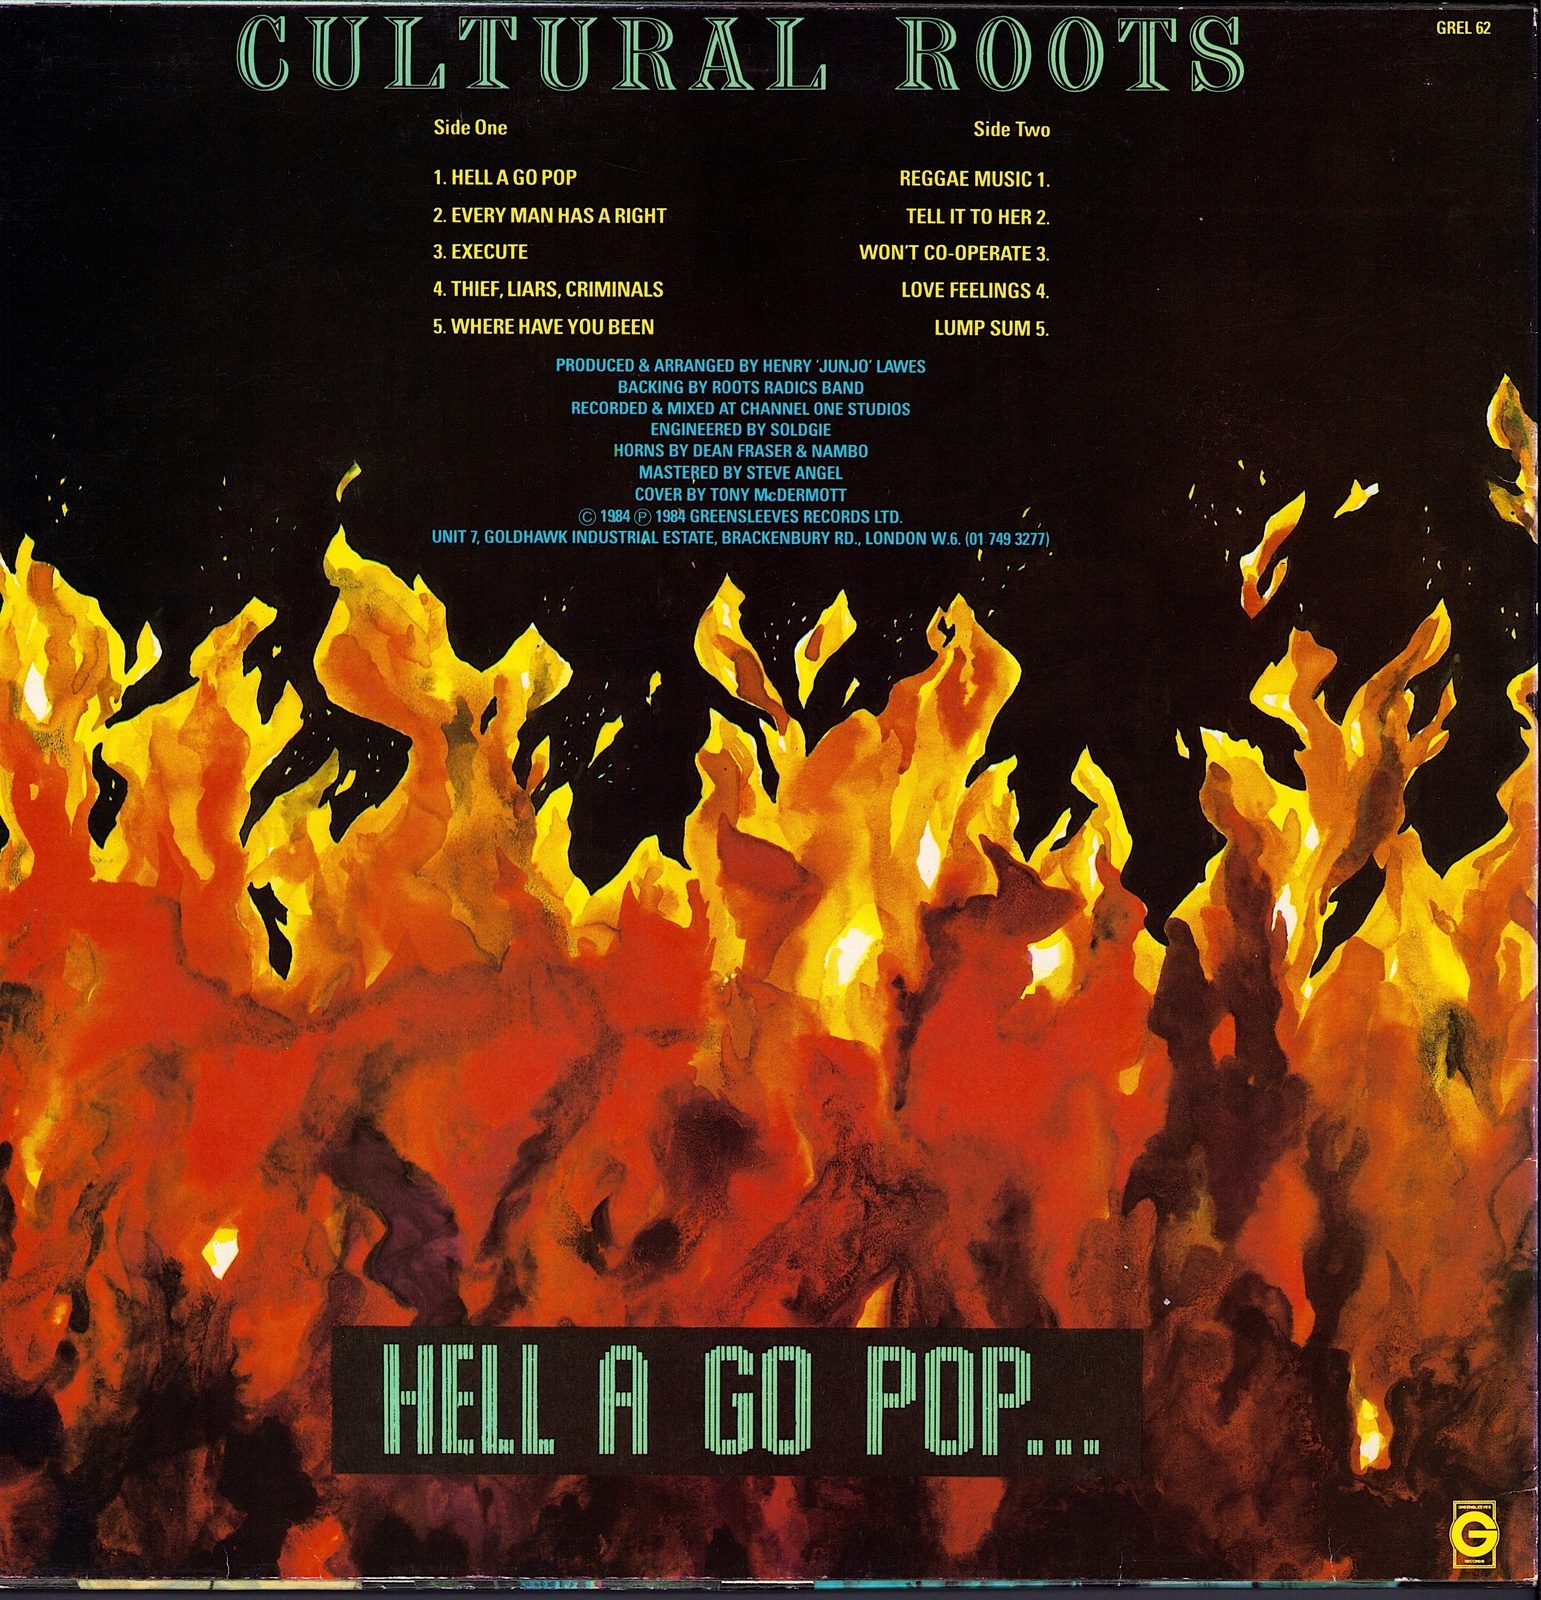 Cultural Roots - Hell A Go Pop Vinyl LP